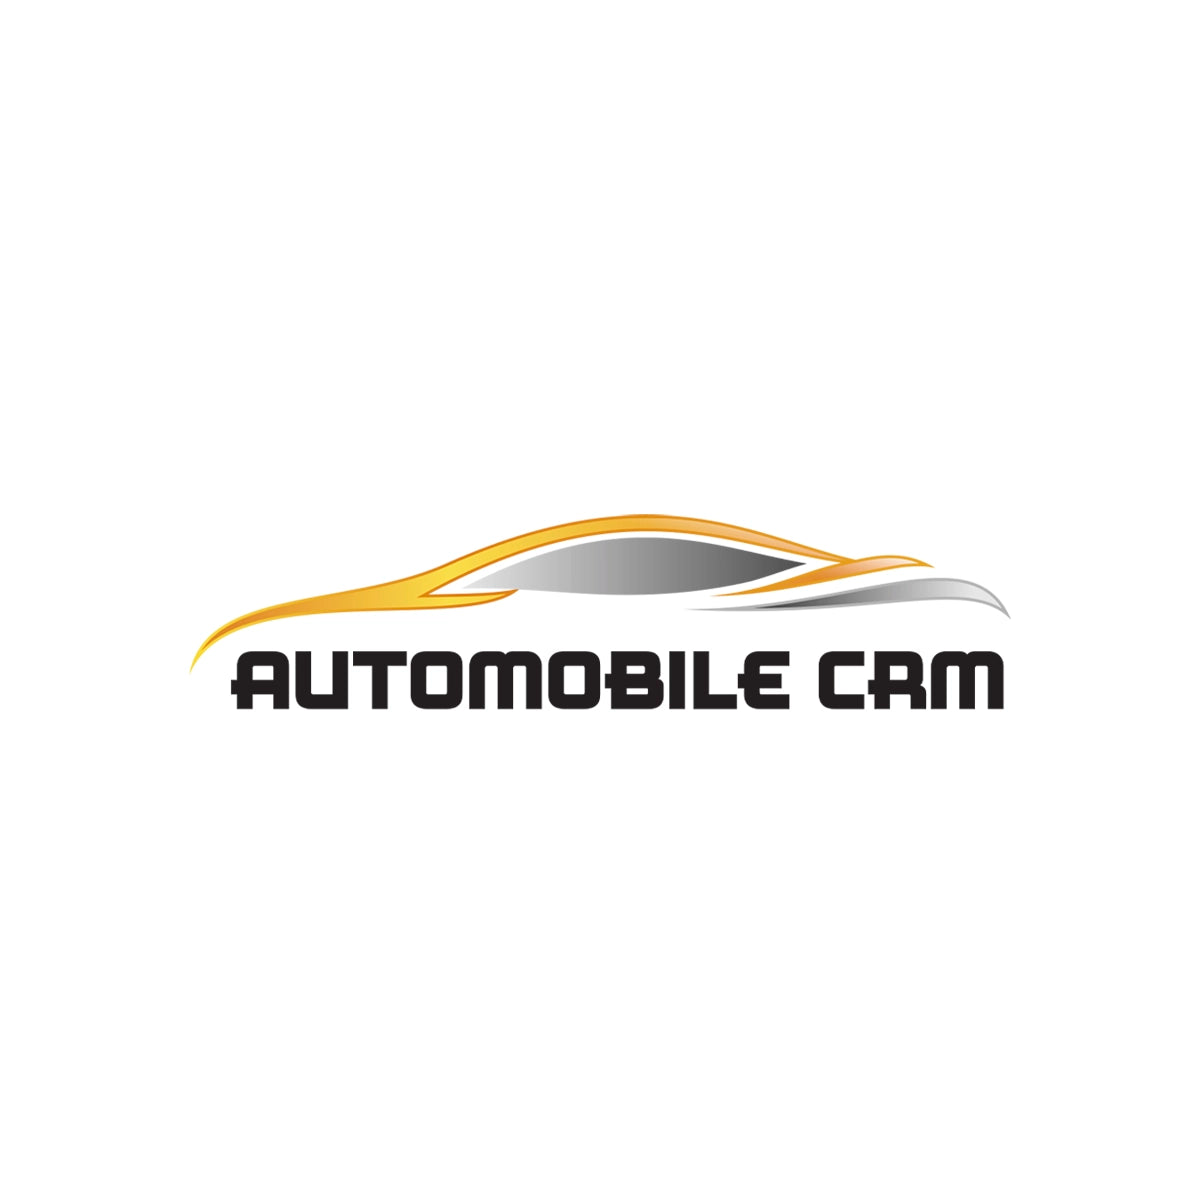 automobilecrm.com